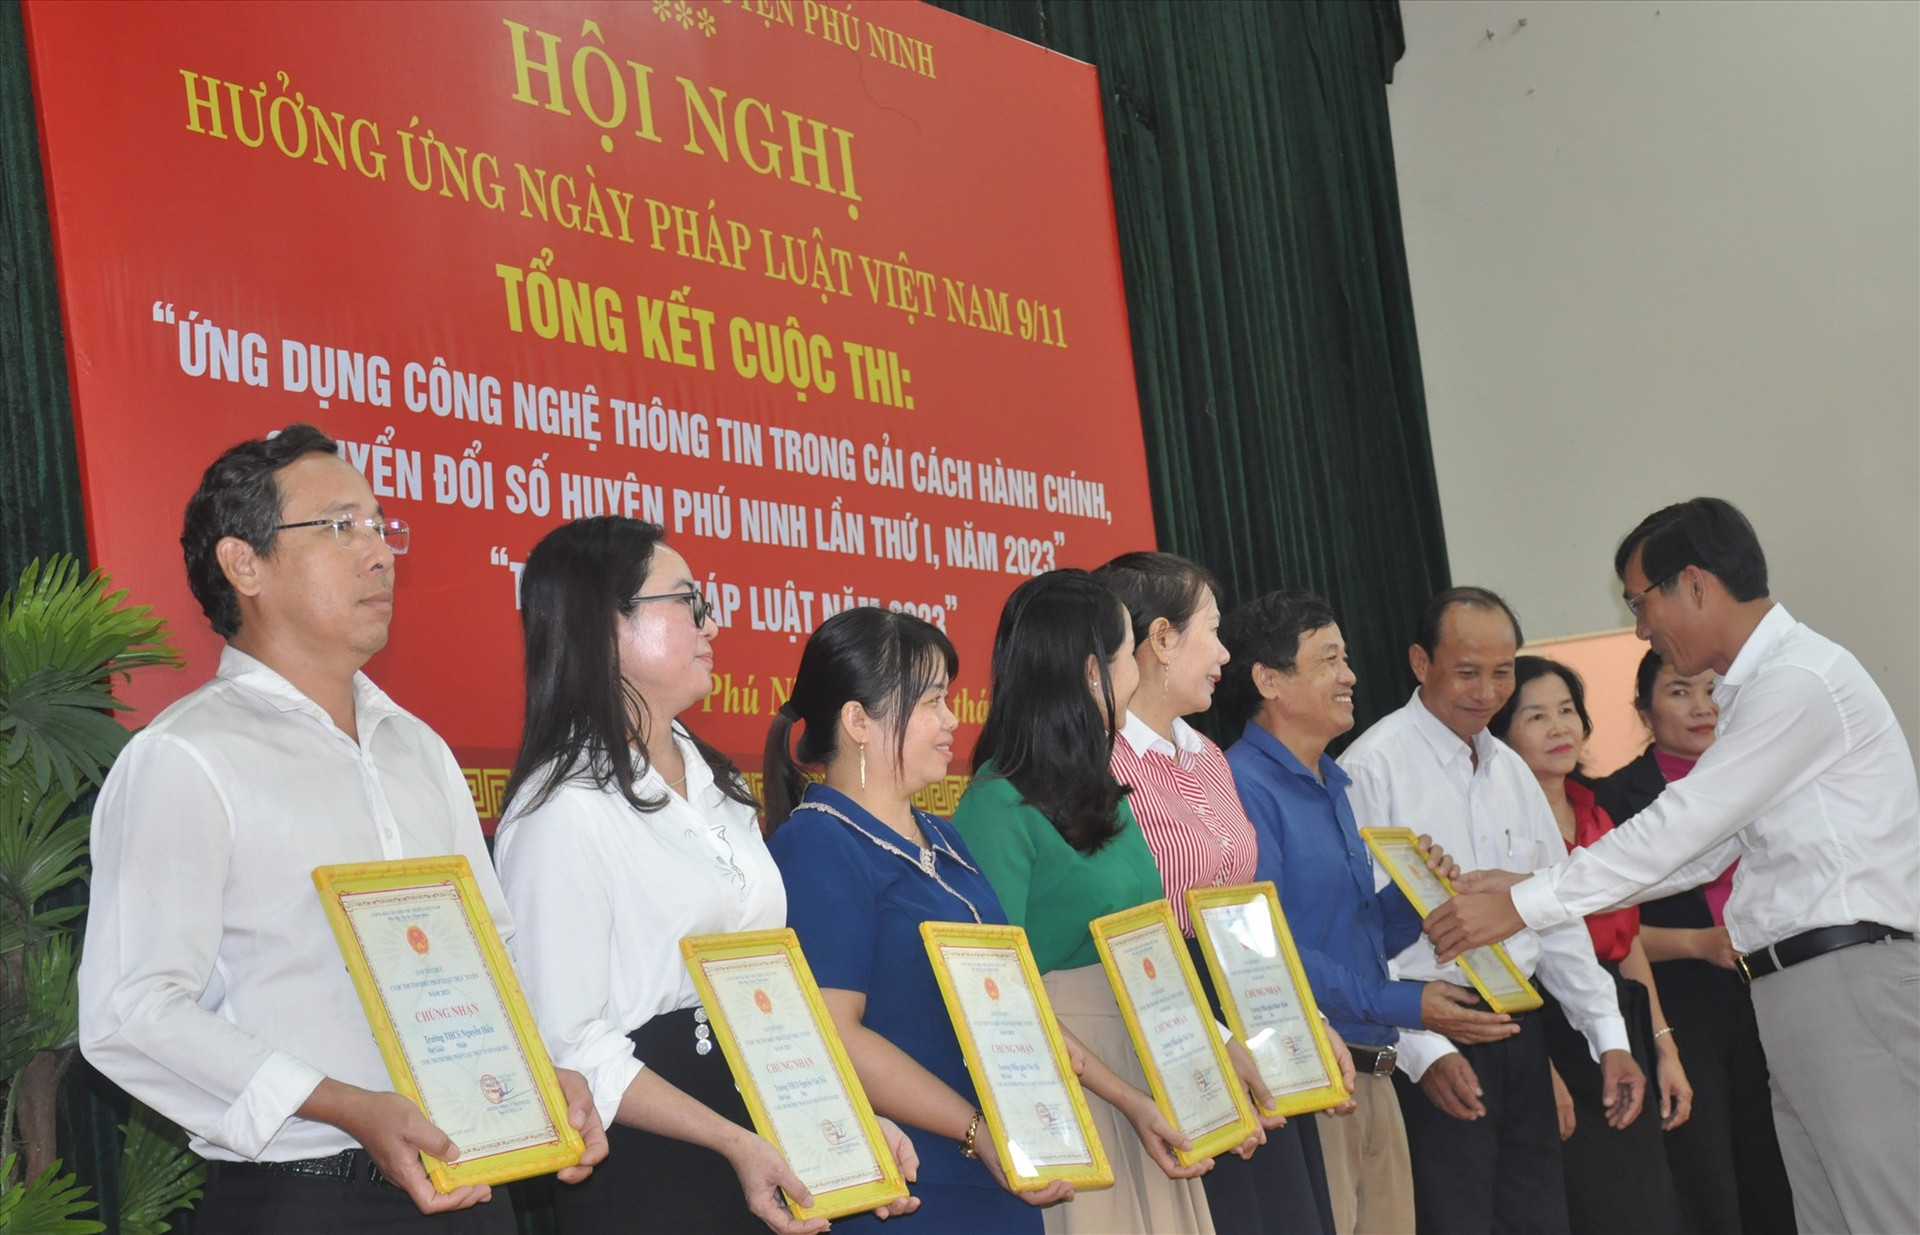 Lãnh đạo huyện Phú Ninh trao thưởng cho các tập thể đạt giải cuộc thi “Tìm hiểu pháp luật trực tuyến năm 2023“. Ảnh: N.Đ